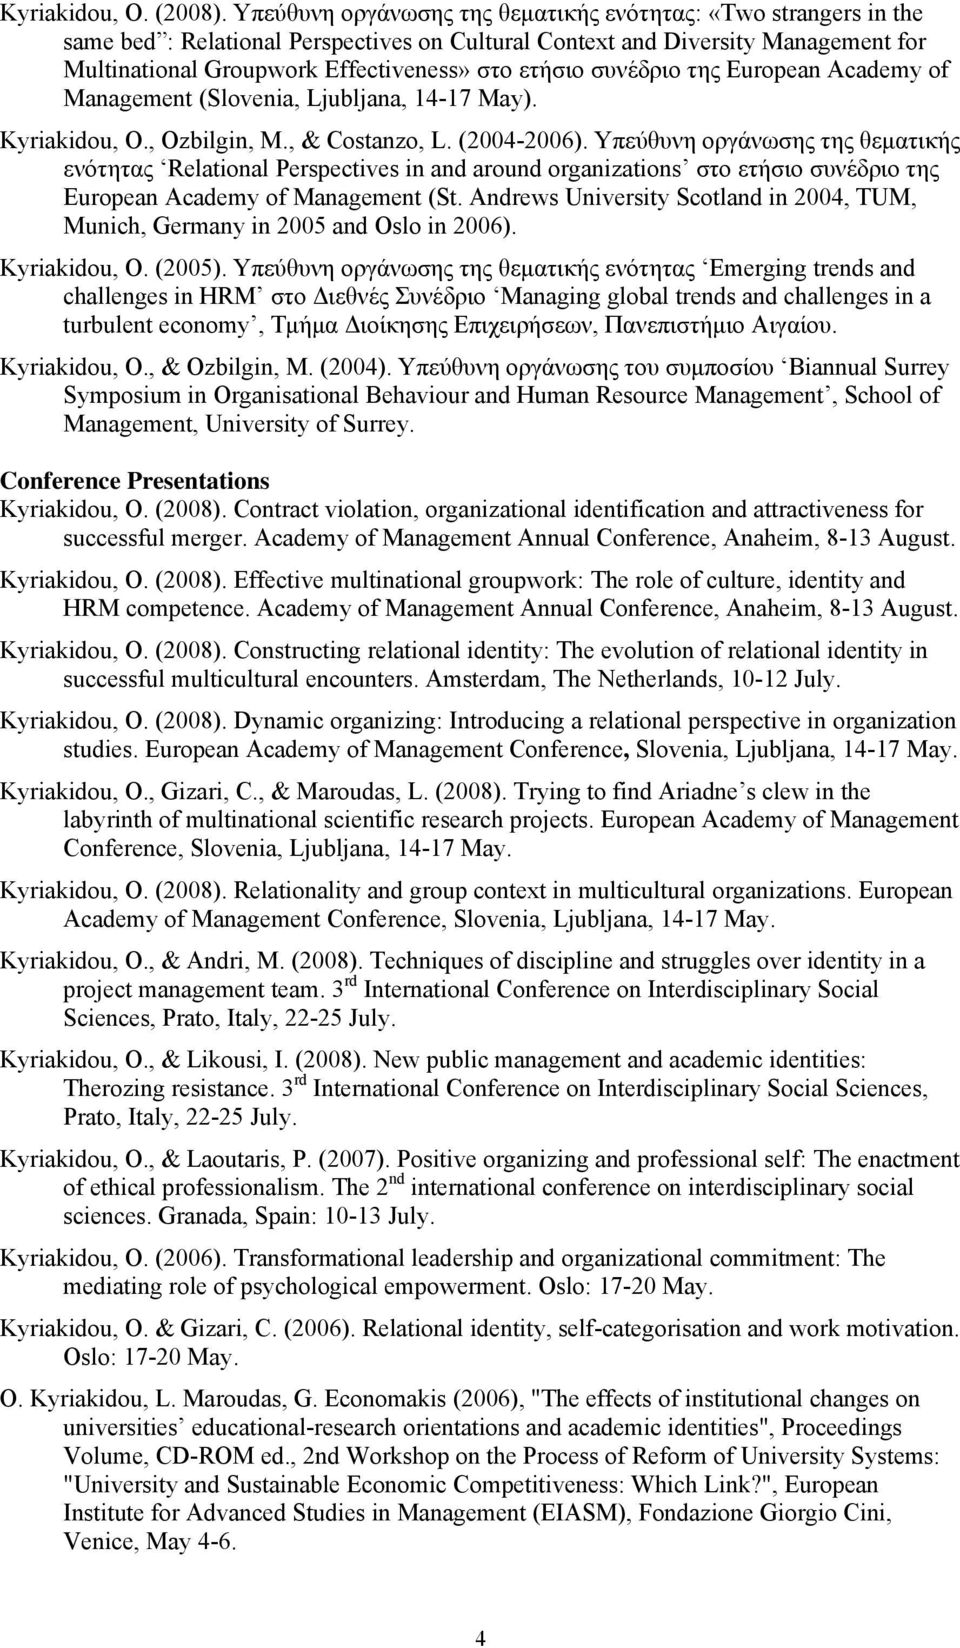 συνέδριο της European Academy of Management (Slovenia, Ljubljana, 14-17 May). Kyriakidou, O., Ozbilgin, M., & Costanzo, L. (2004-2006).